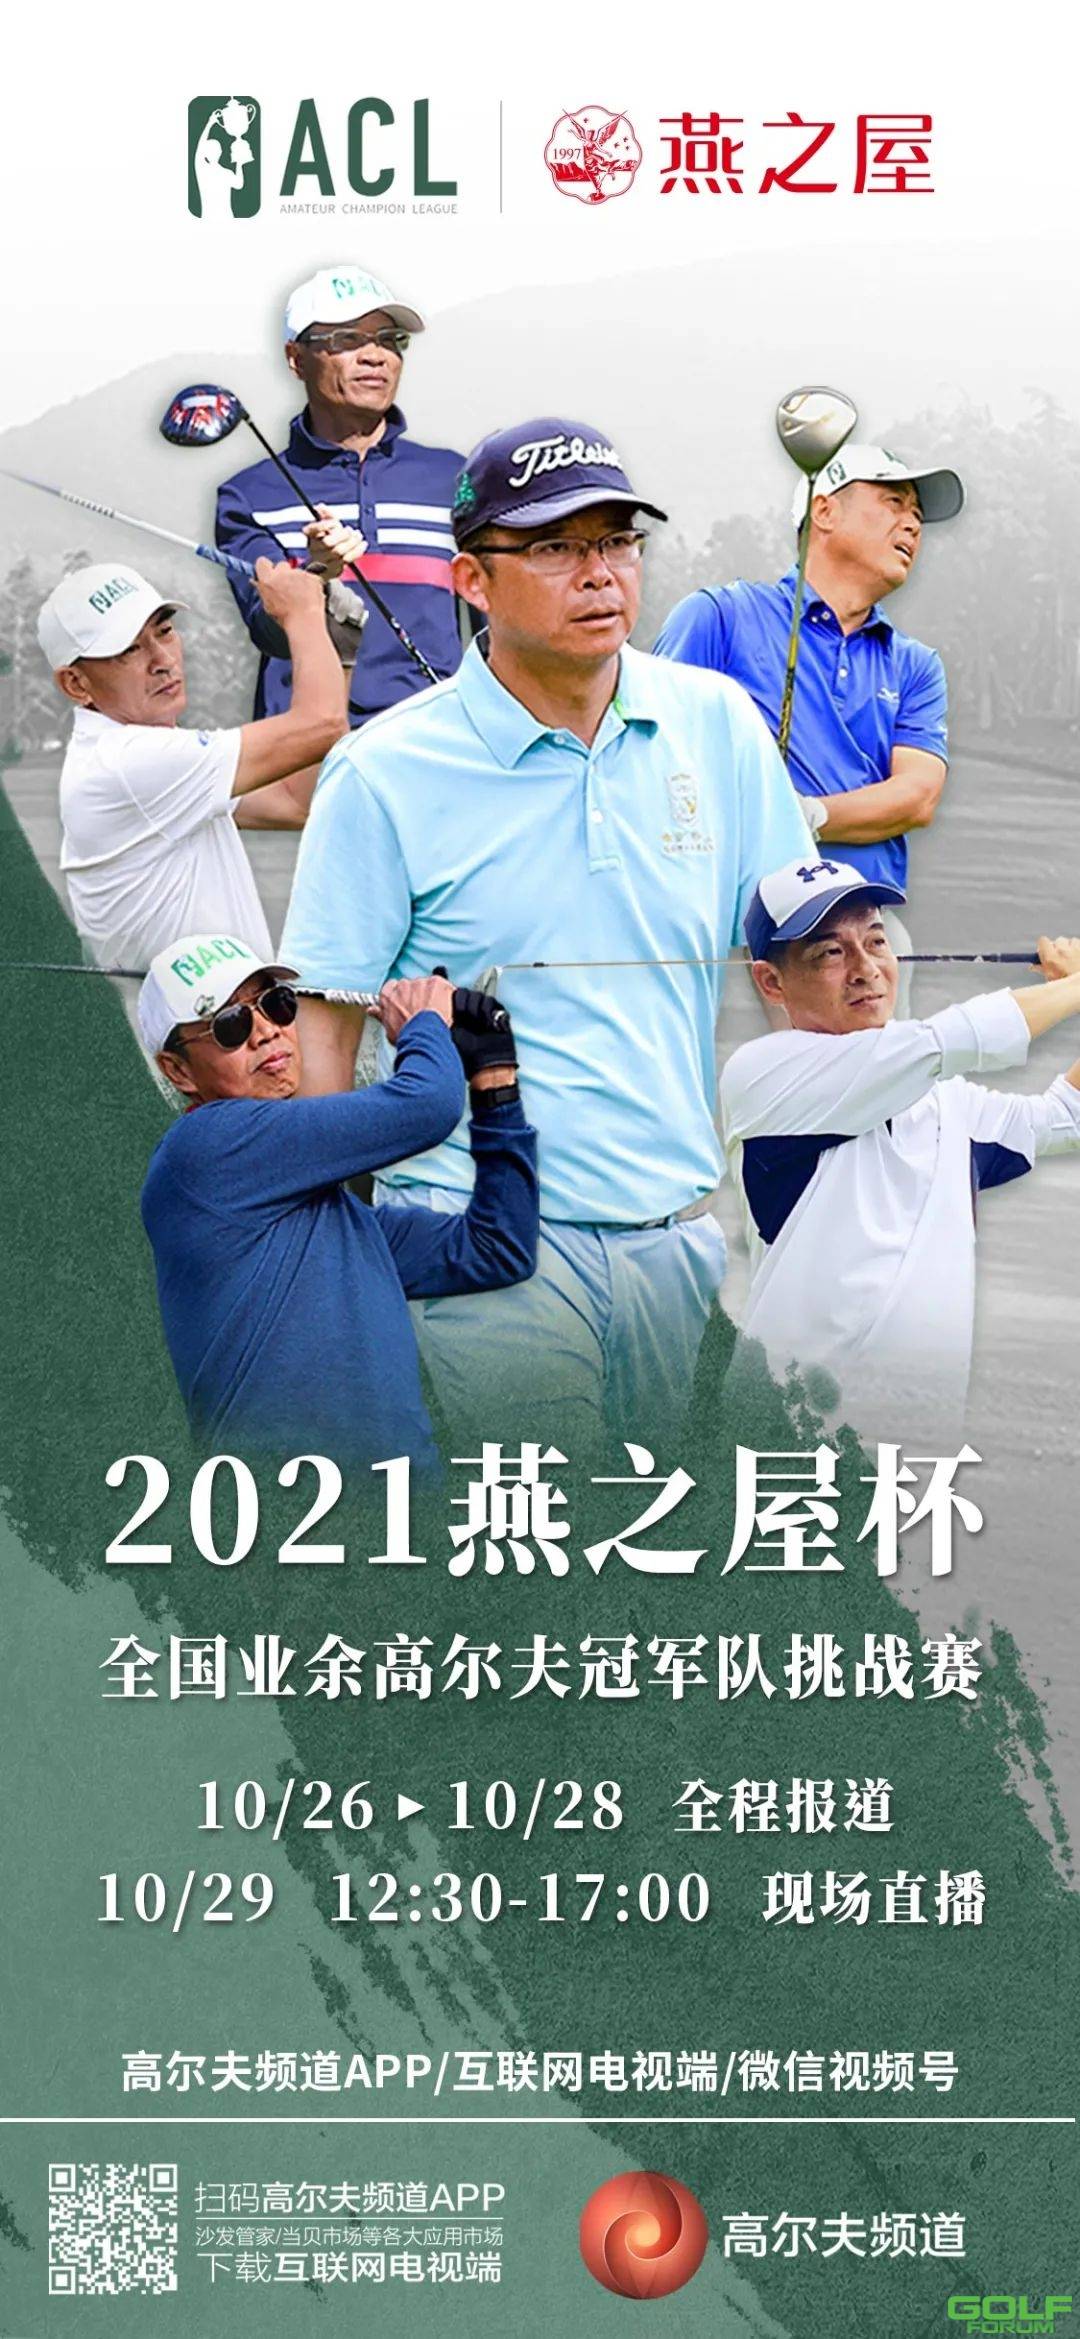 2021“燕之屋”杯全国业余高尔夫冠军队挑战赛即将拉开序幕 ...